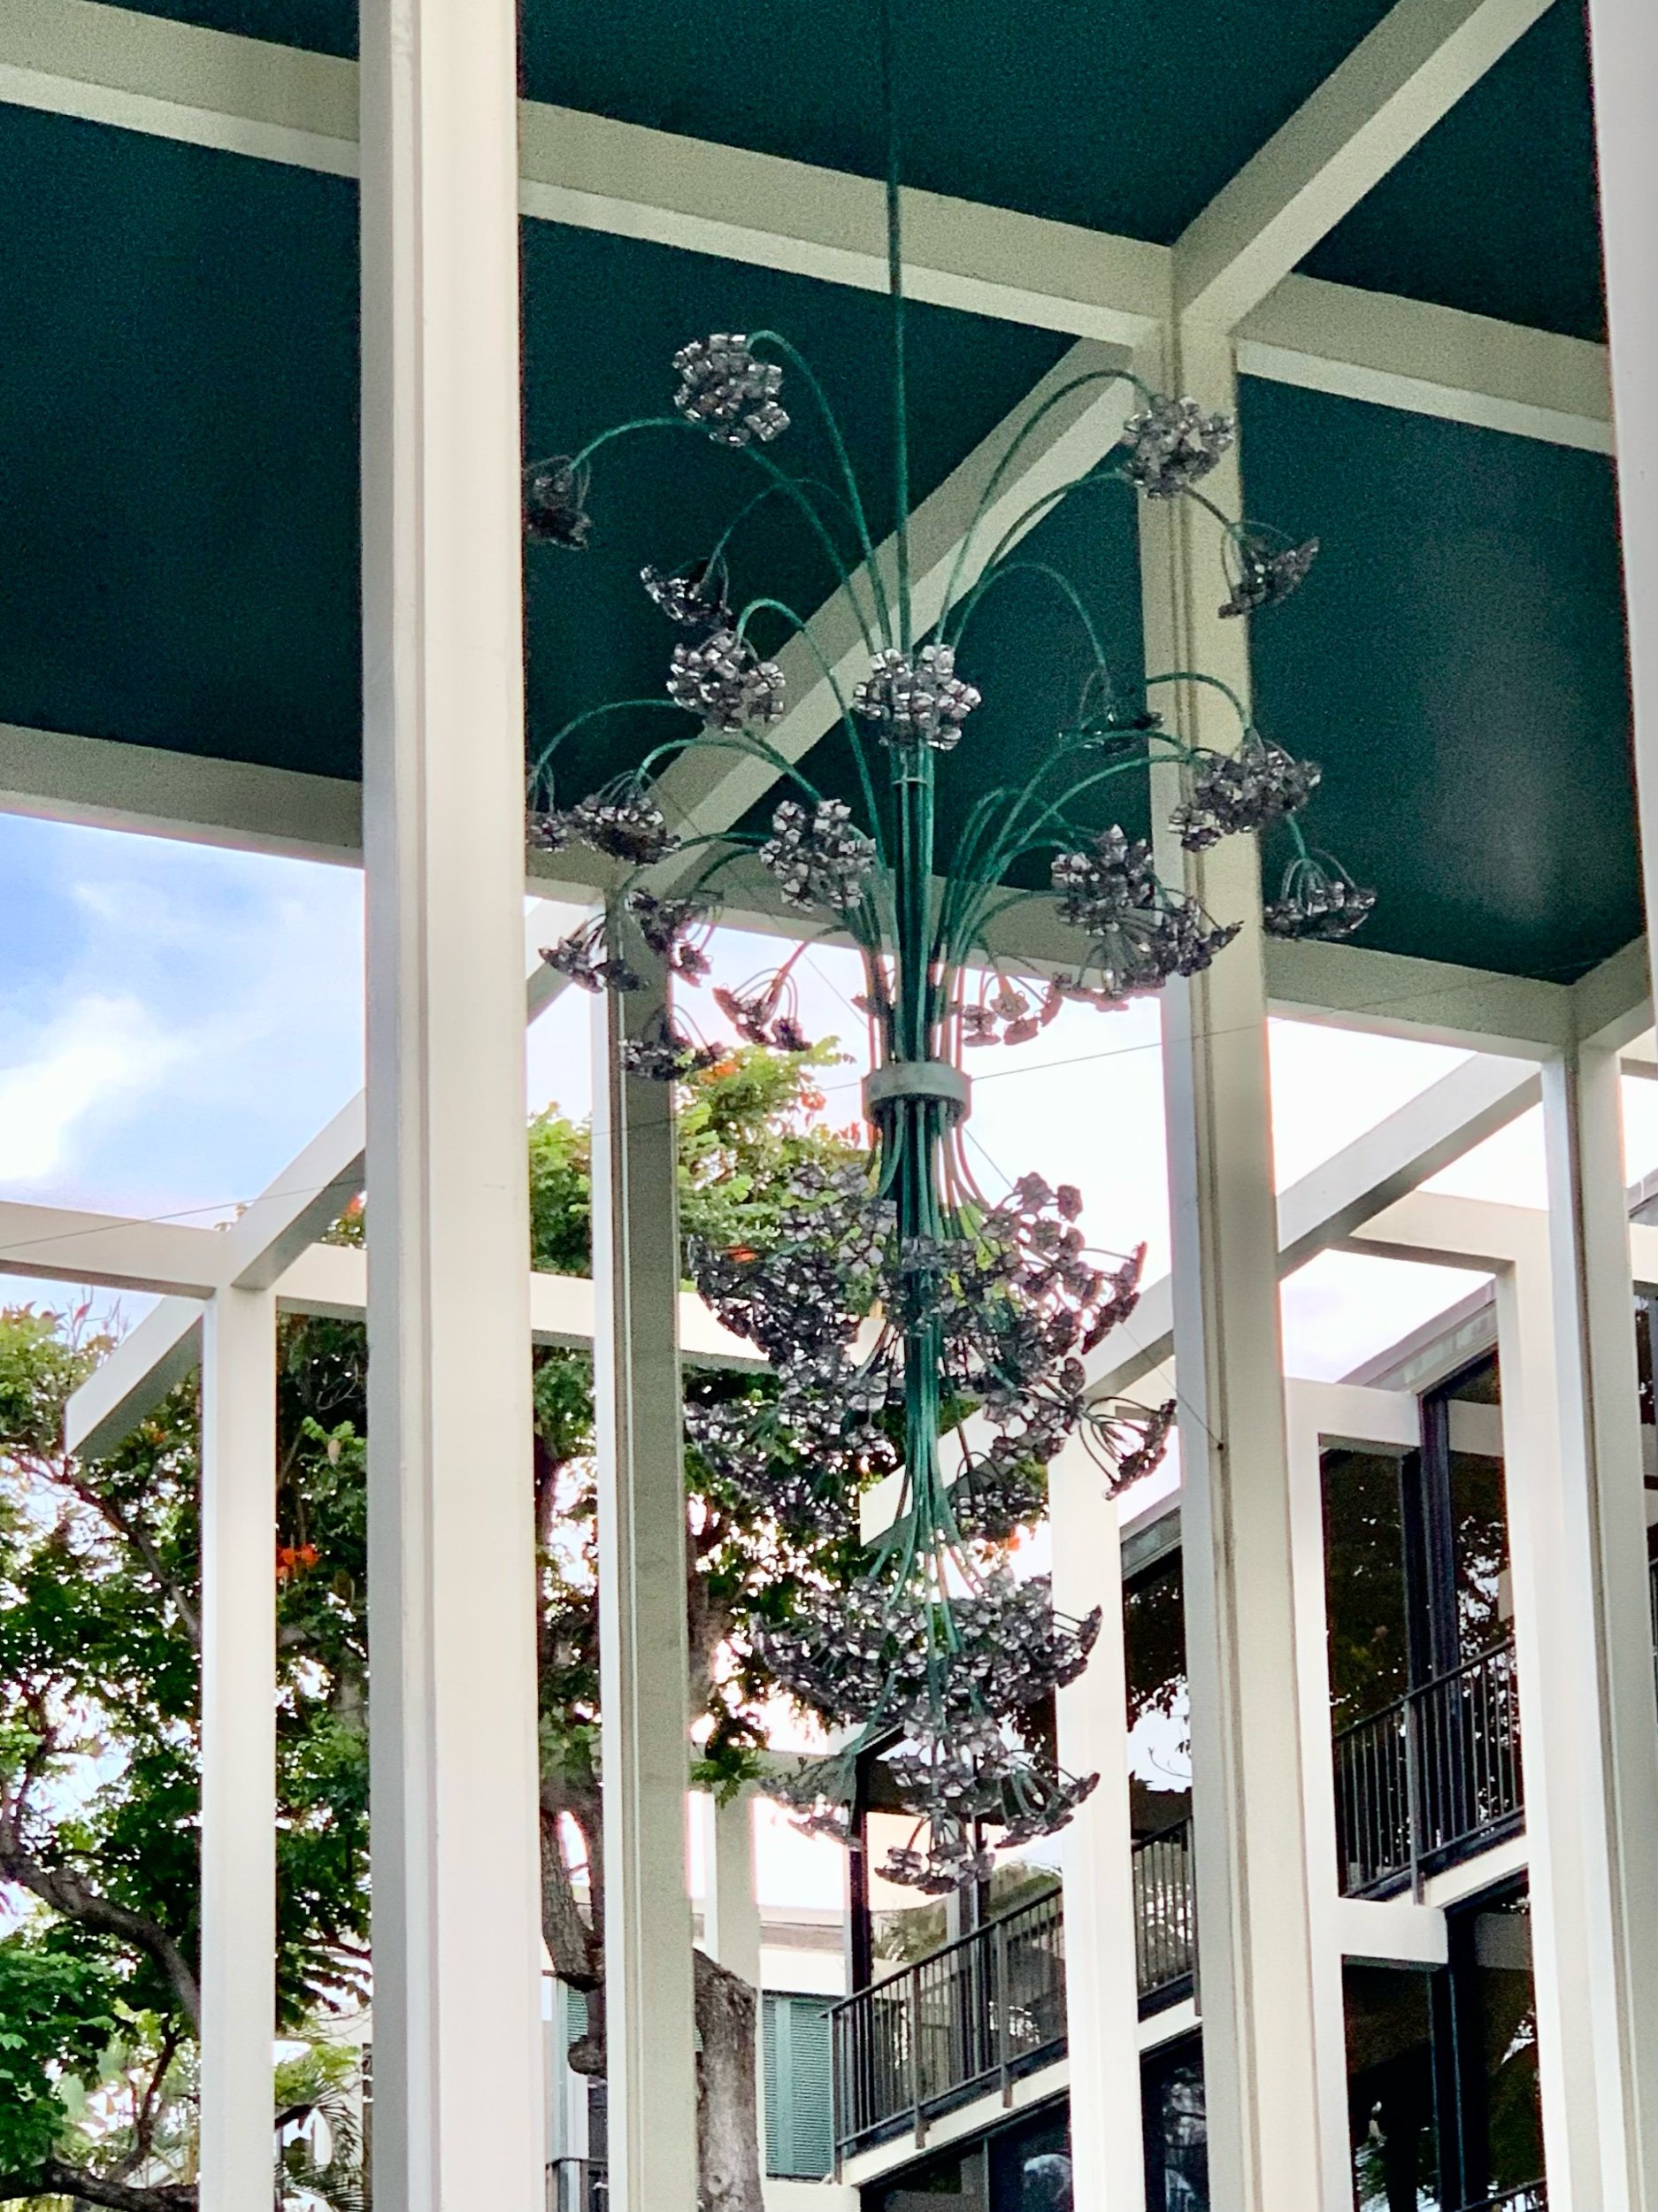  Arfful outdoor chandelier 